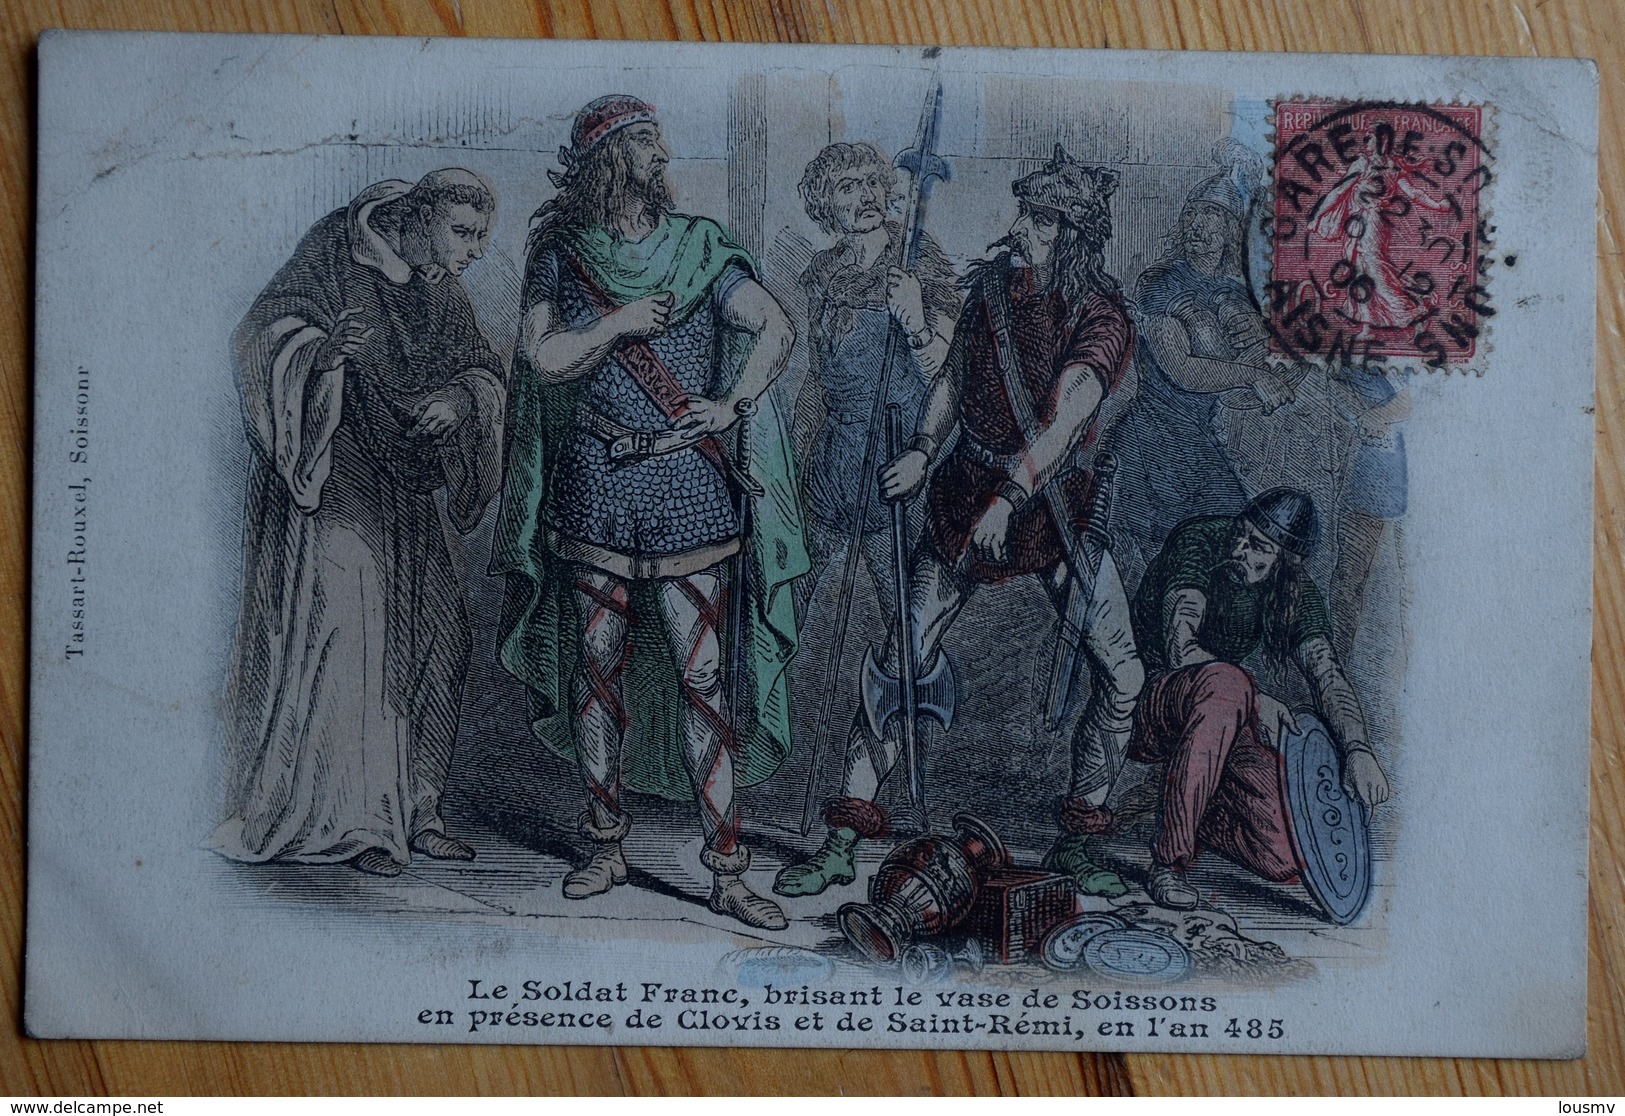 Le Soldat Franc Brisant Le Vase De Soissons En Présence De Clovis Et De Saint-Rémi En L'an 485 - Colorisée - (n°7567) - Histoire